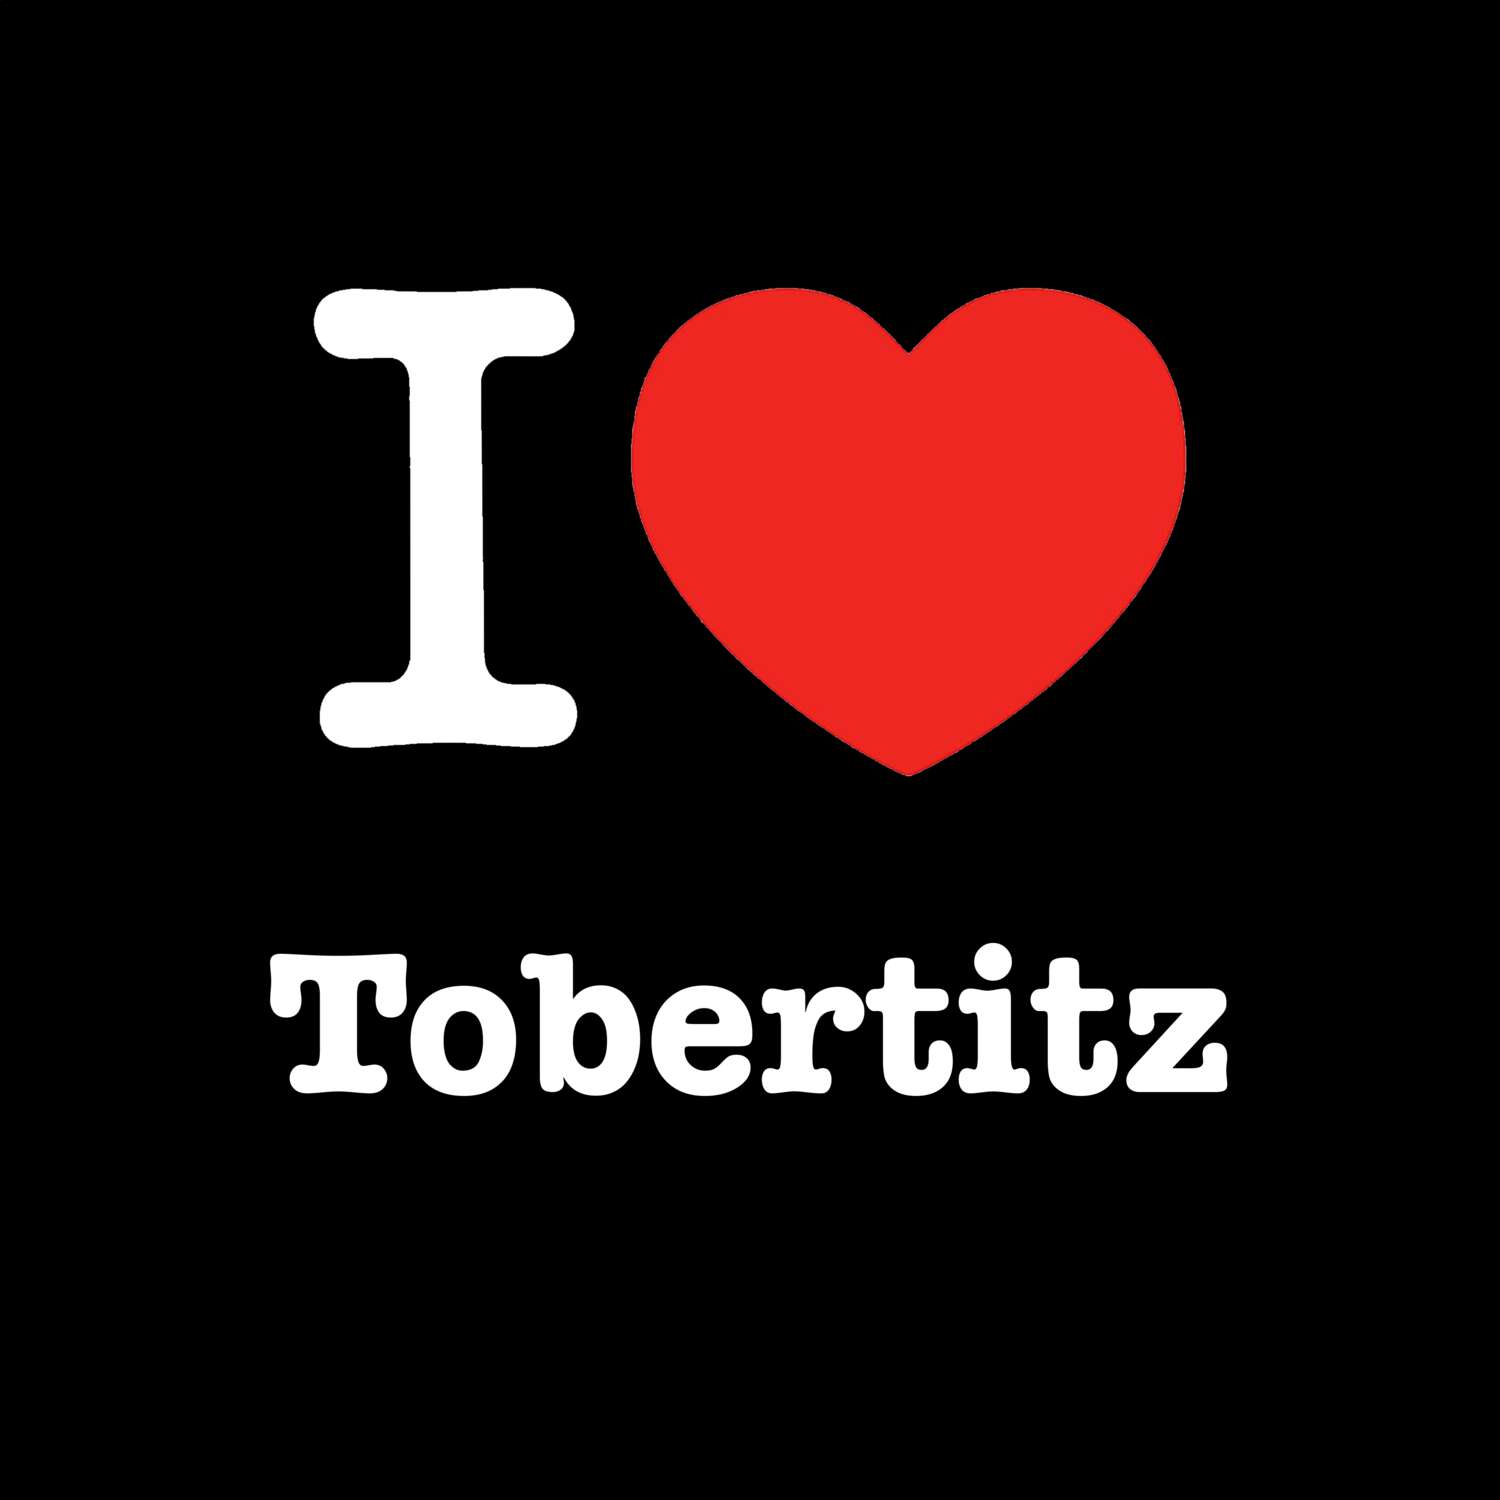 Tobertitz T-Shirt »I love«